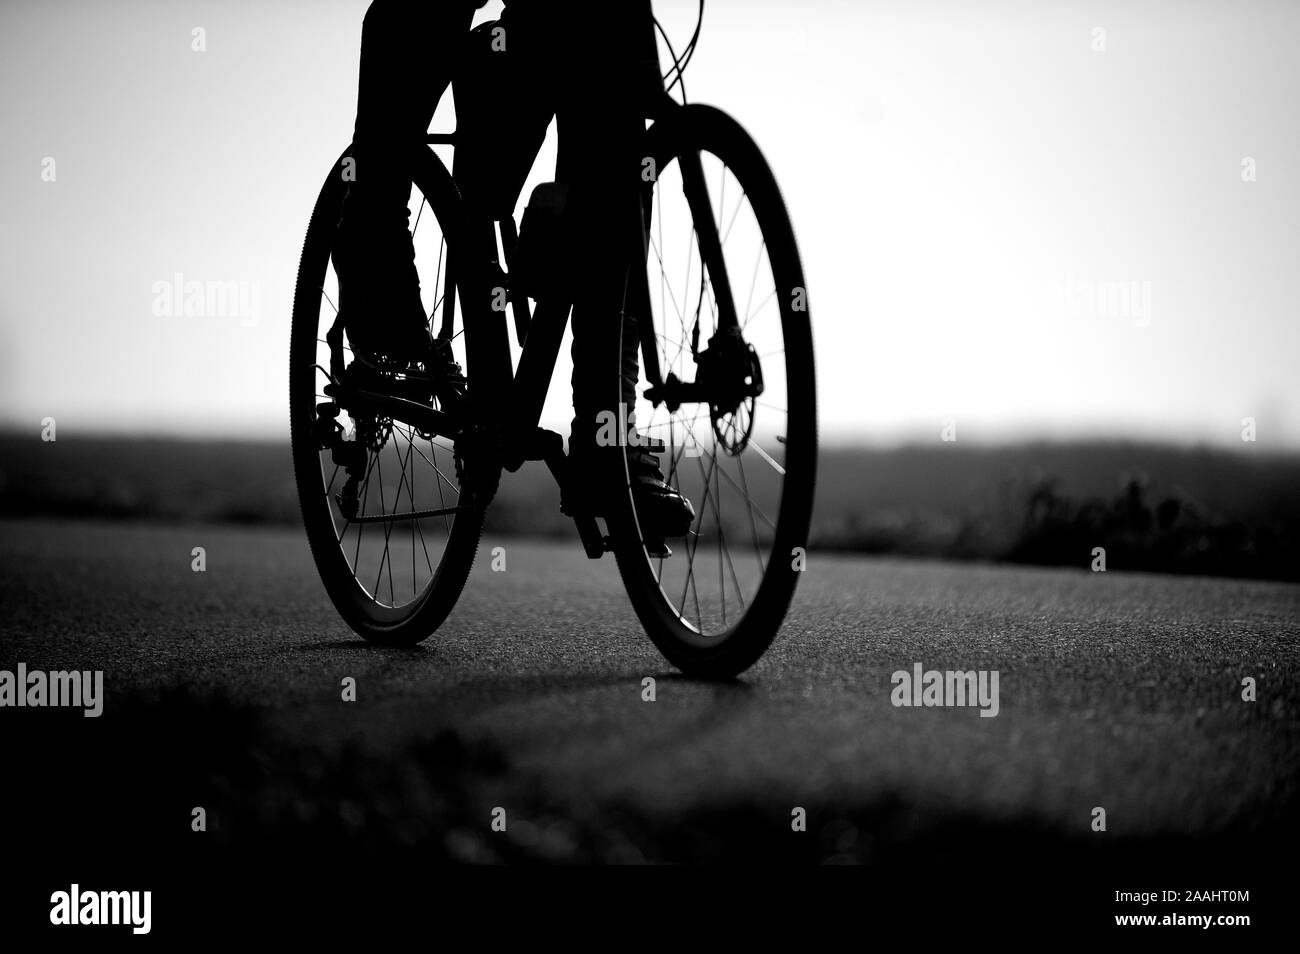 Fotografía en blanco y negro de la bicicleta de carretera y las piernas de un hombre irreconocible. Muy poca profundidad de campo. Foto de stock